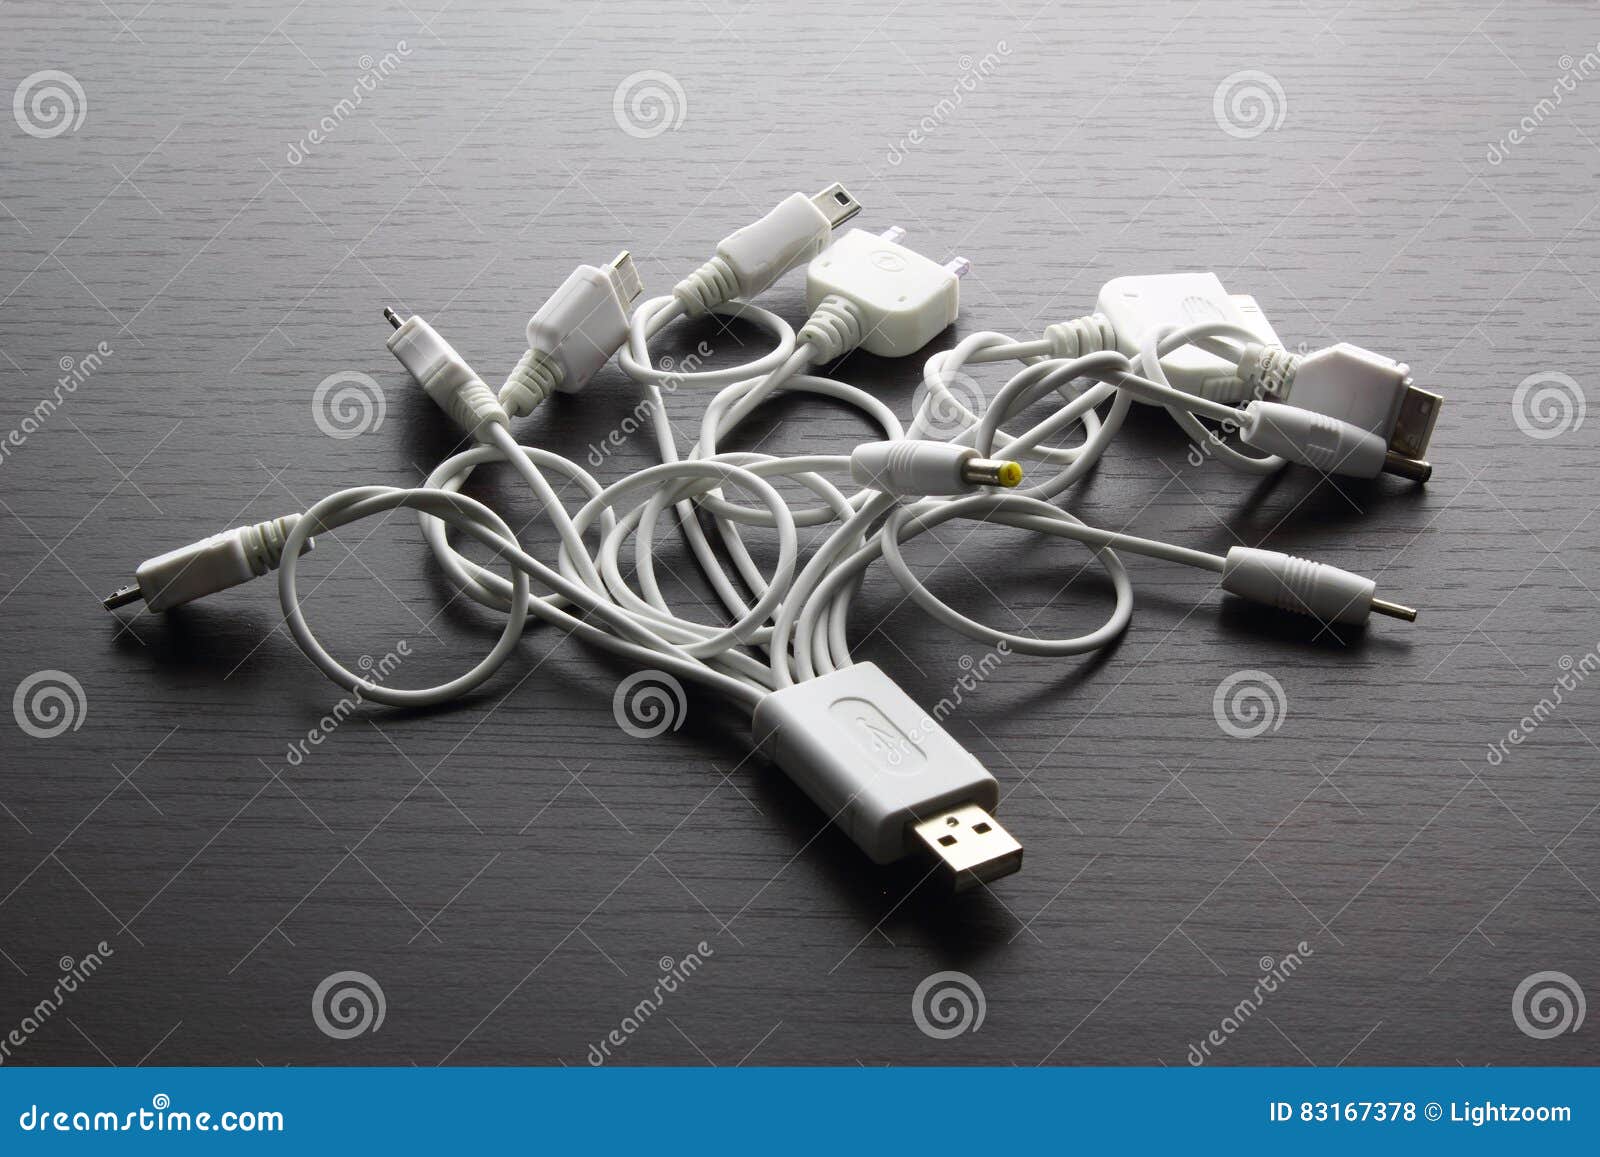 USB Multi Adaptors on Black Background